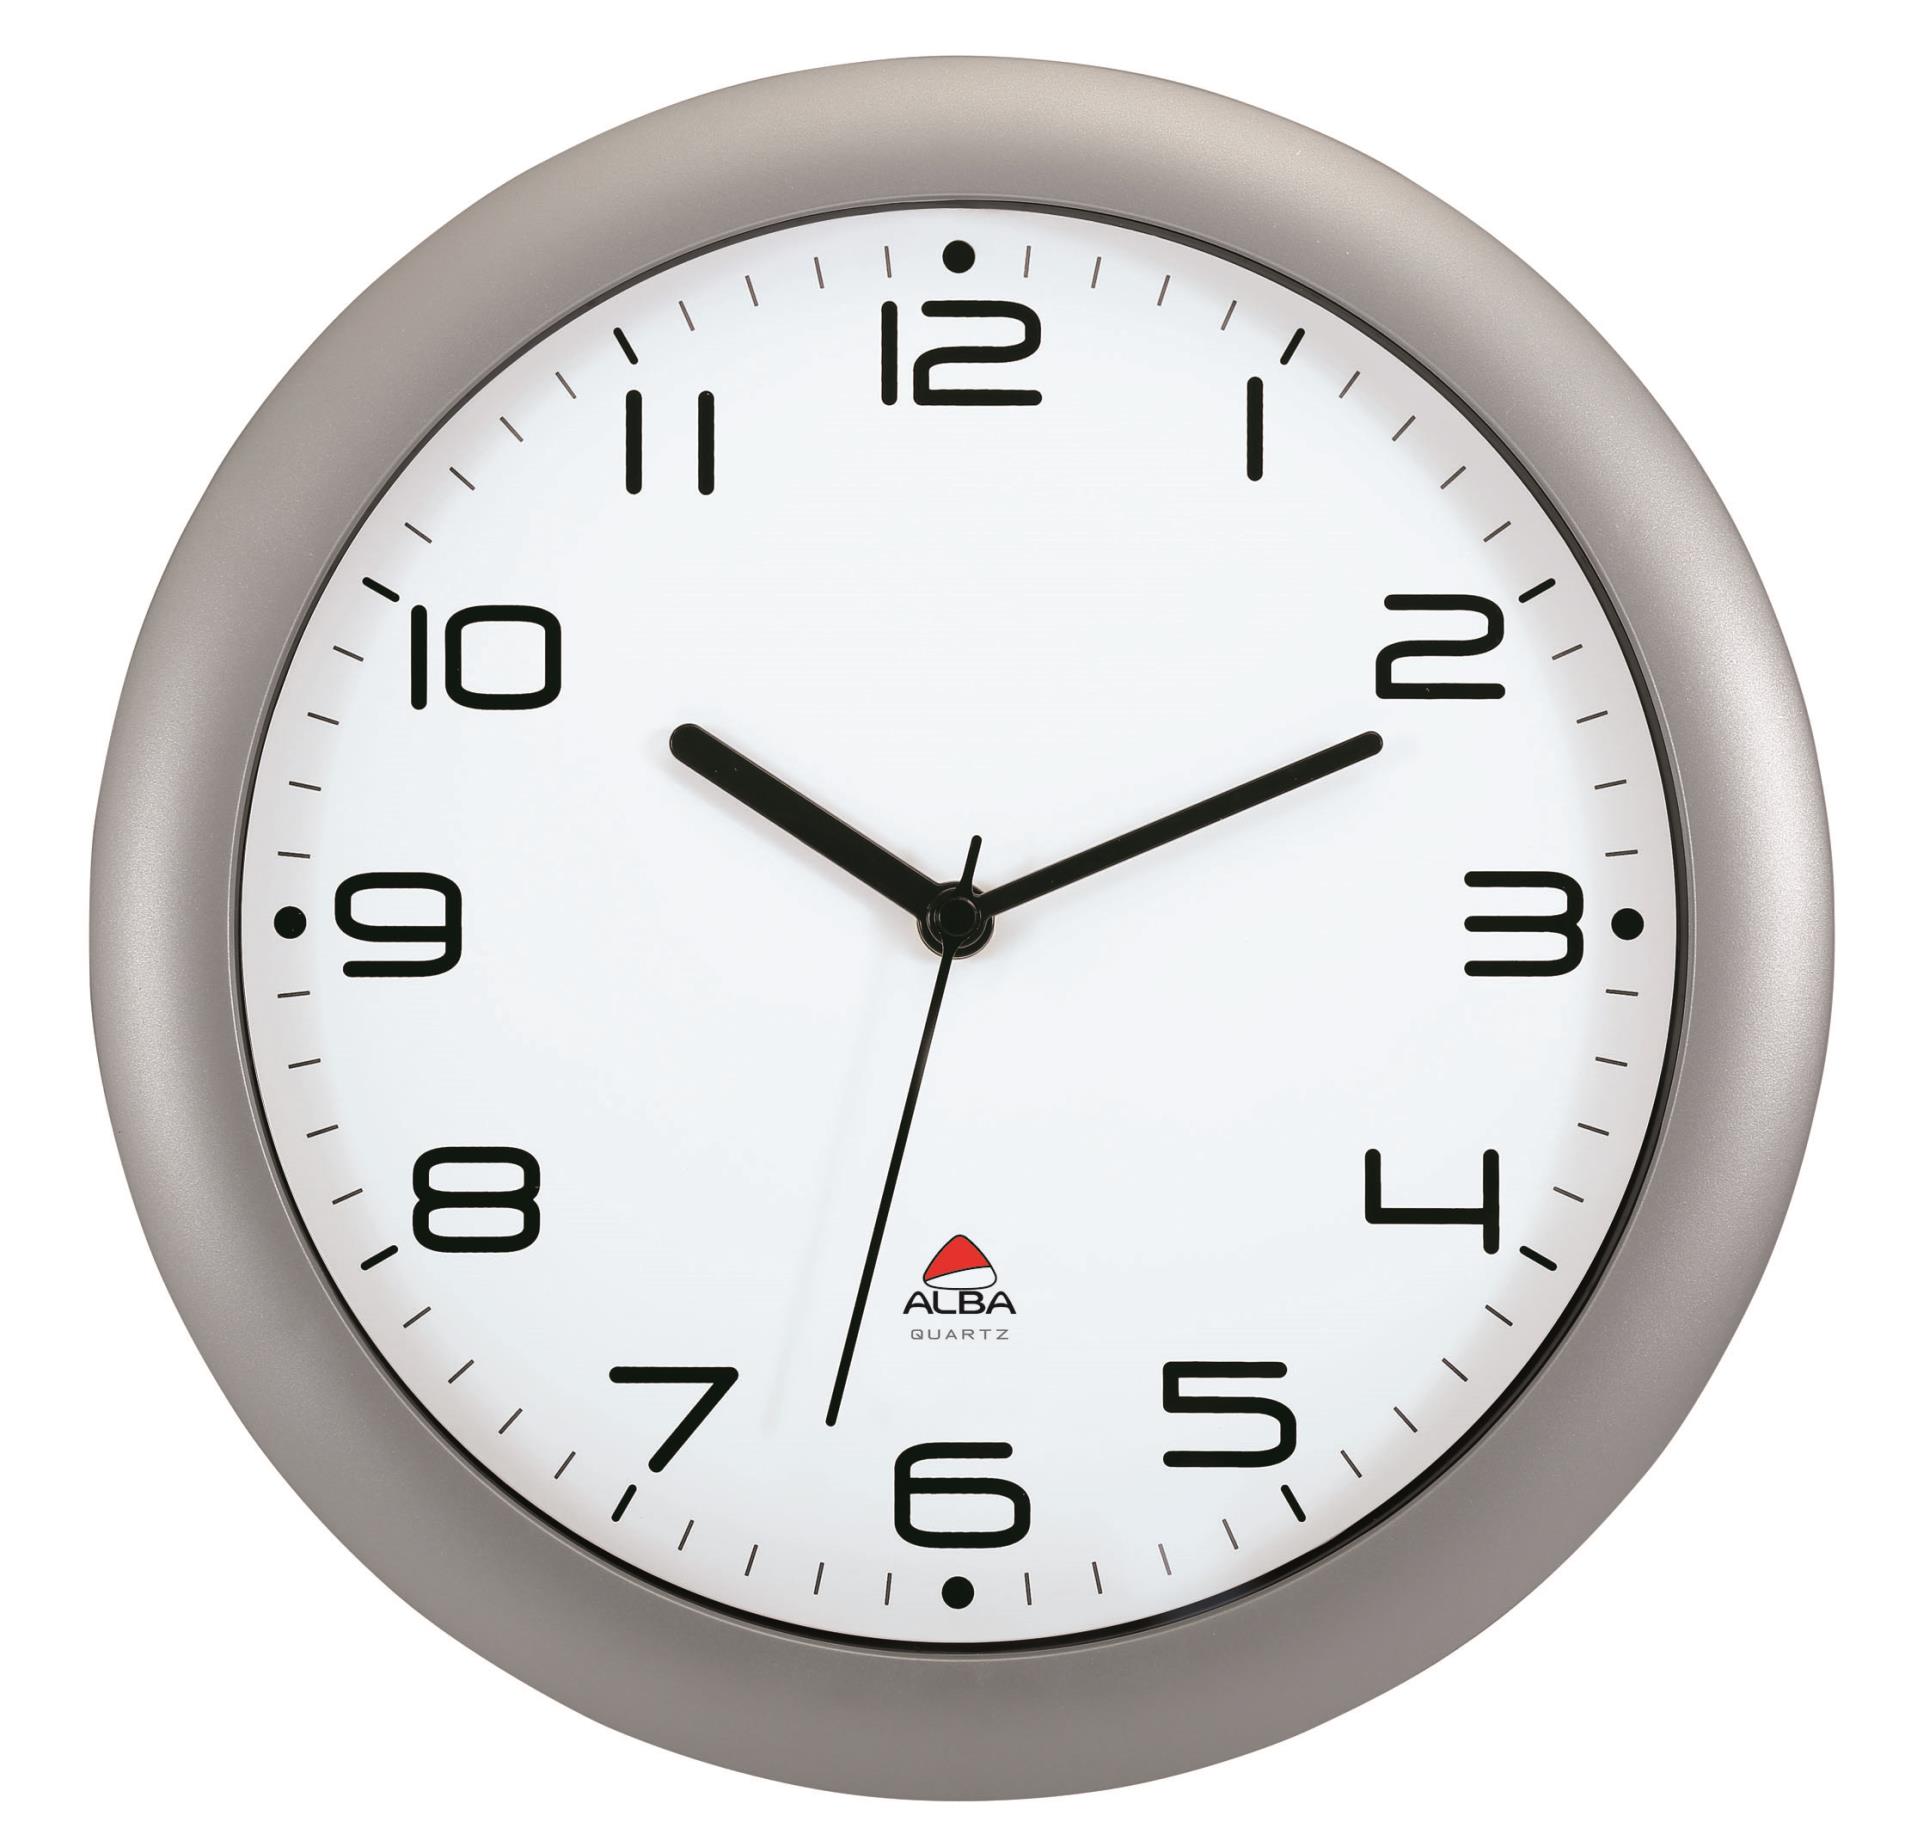 Alba France Nástěnné hodiny Alba - plastové, průměr 30 cm, stříbrné